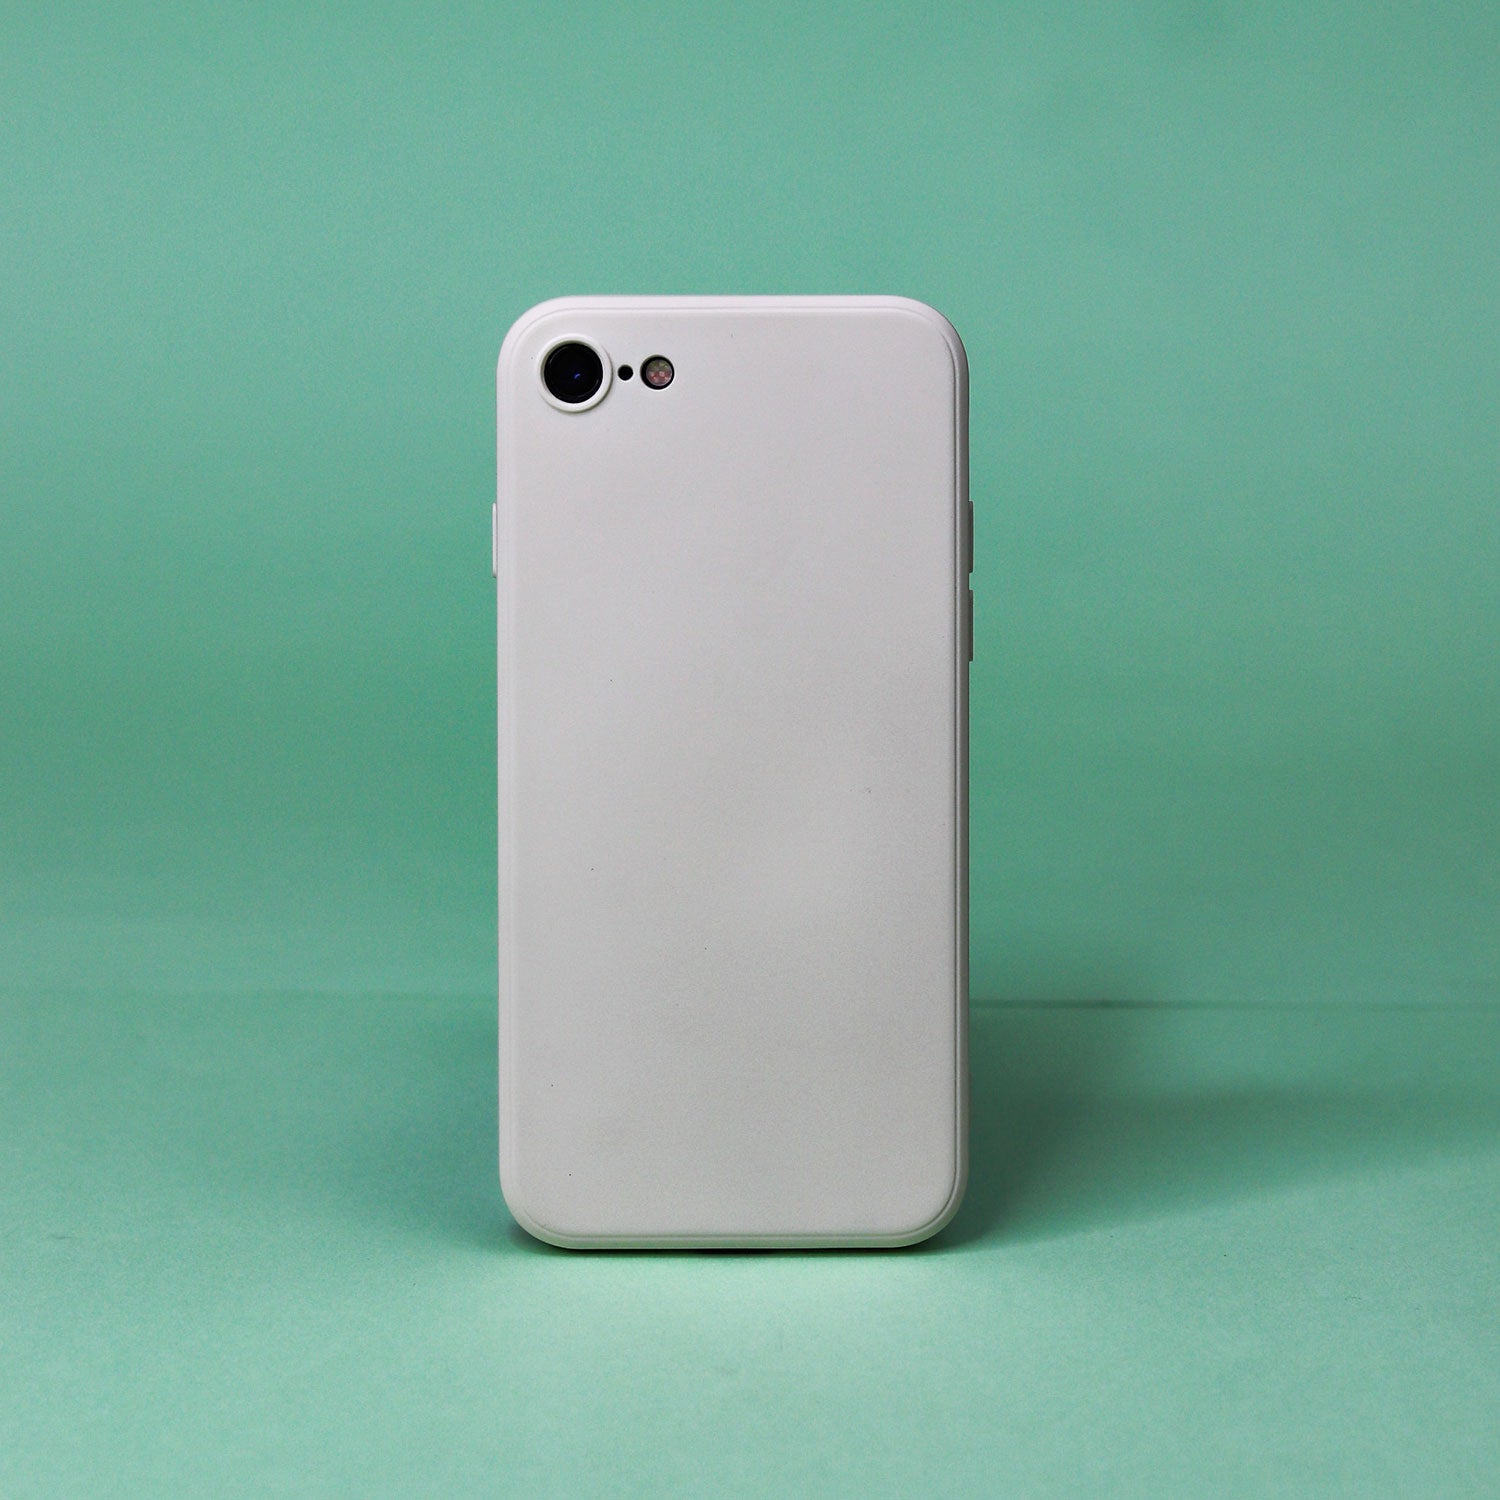 Square Liquid Silicone Phone Case for iPhone7